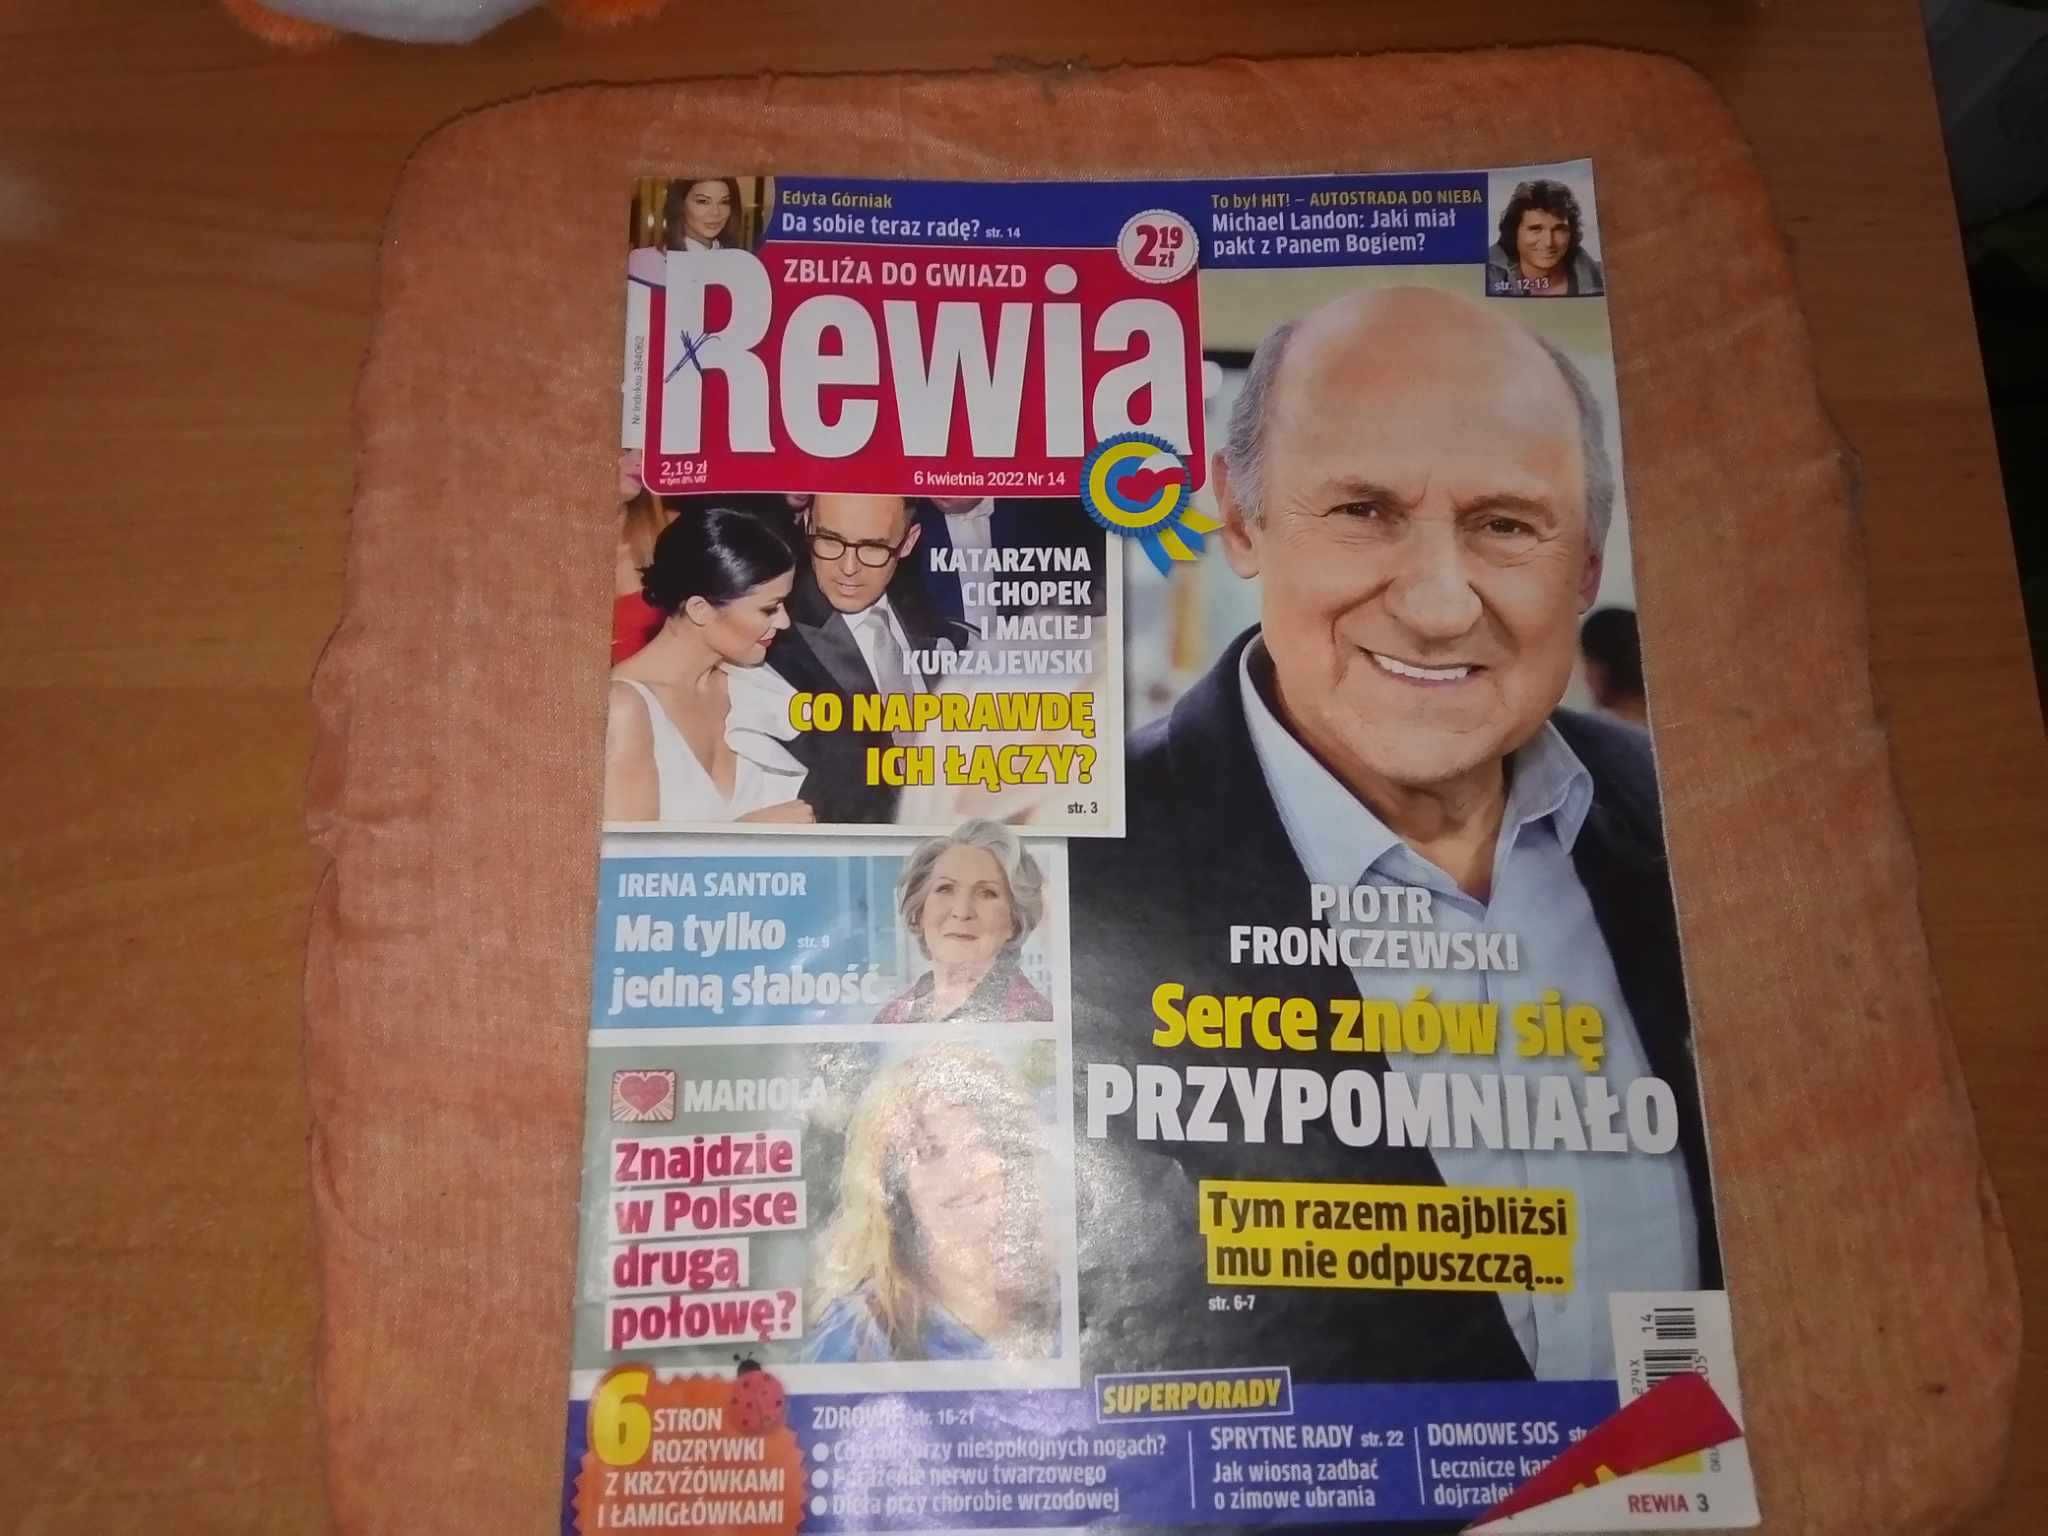 Tygodnik Rewia zbliża do gwiazd nr 14 kwiecień 2022 gazeta